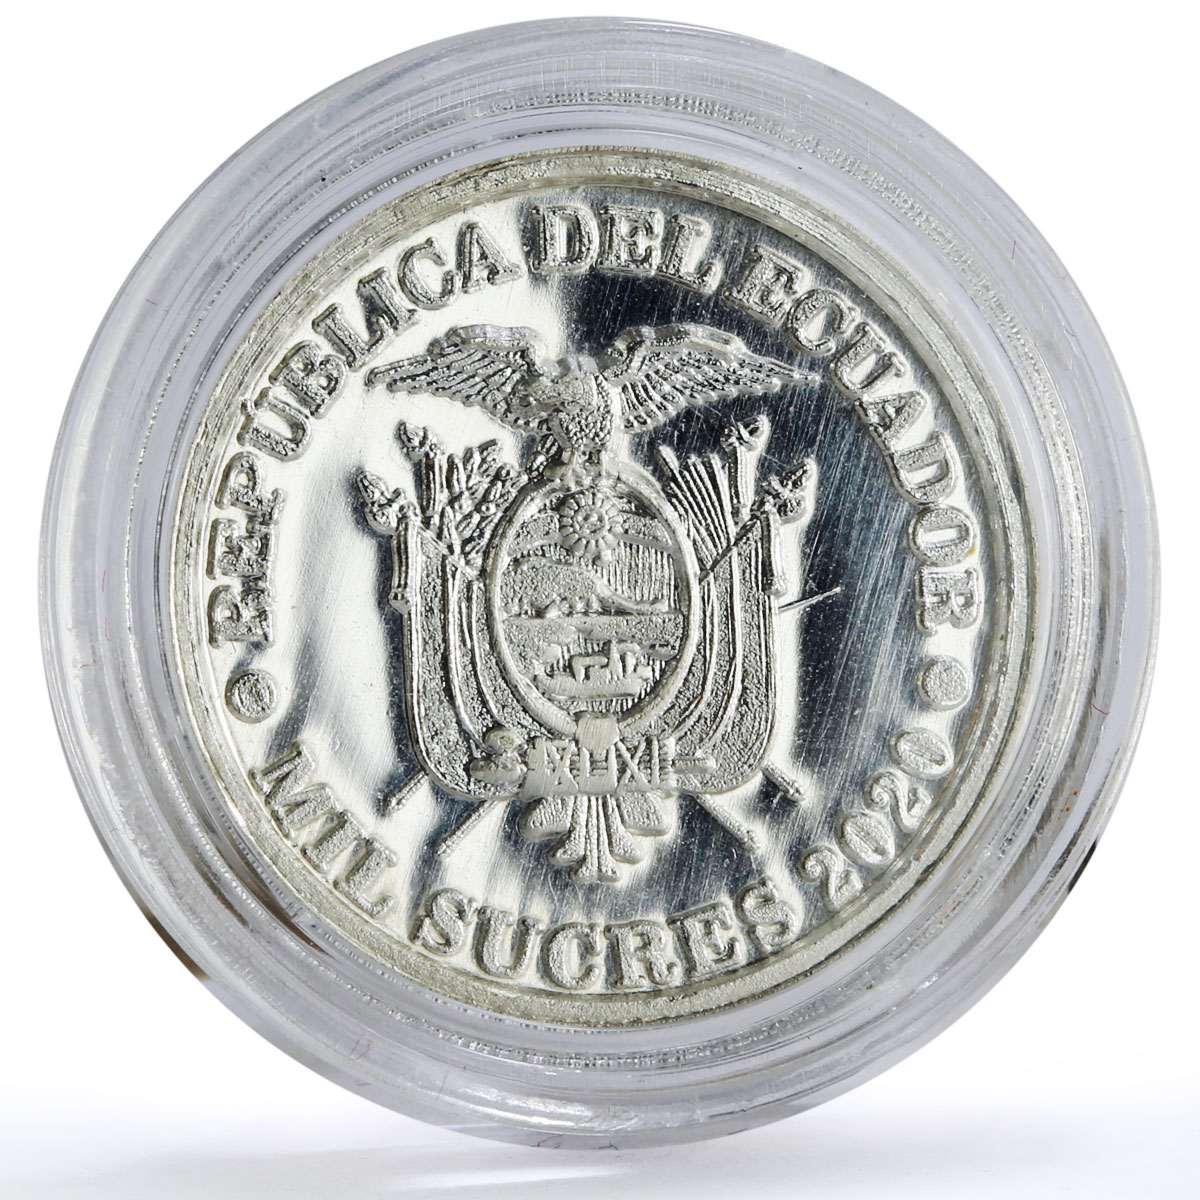 Ecuador 1000 sucres 46th President Leon Febres Cordero Politics silver coin 2020